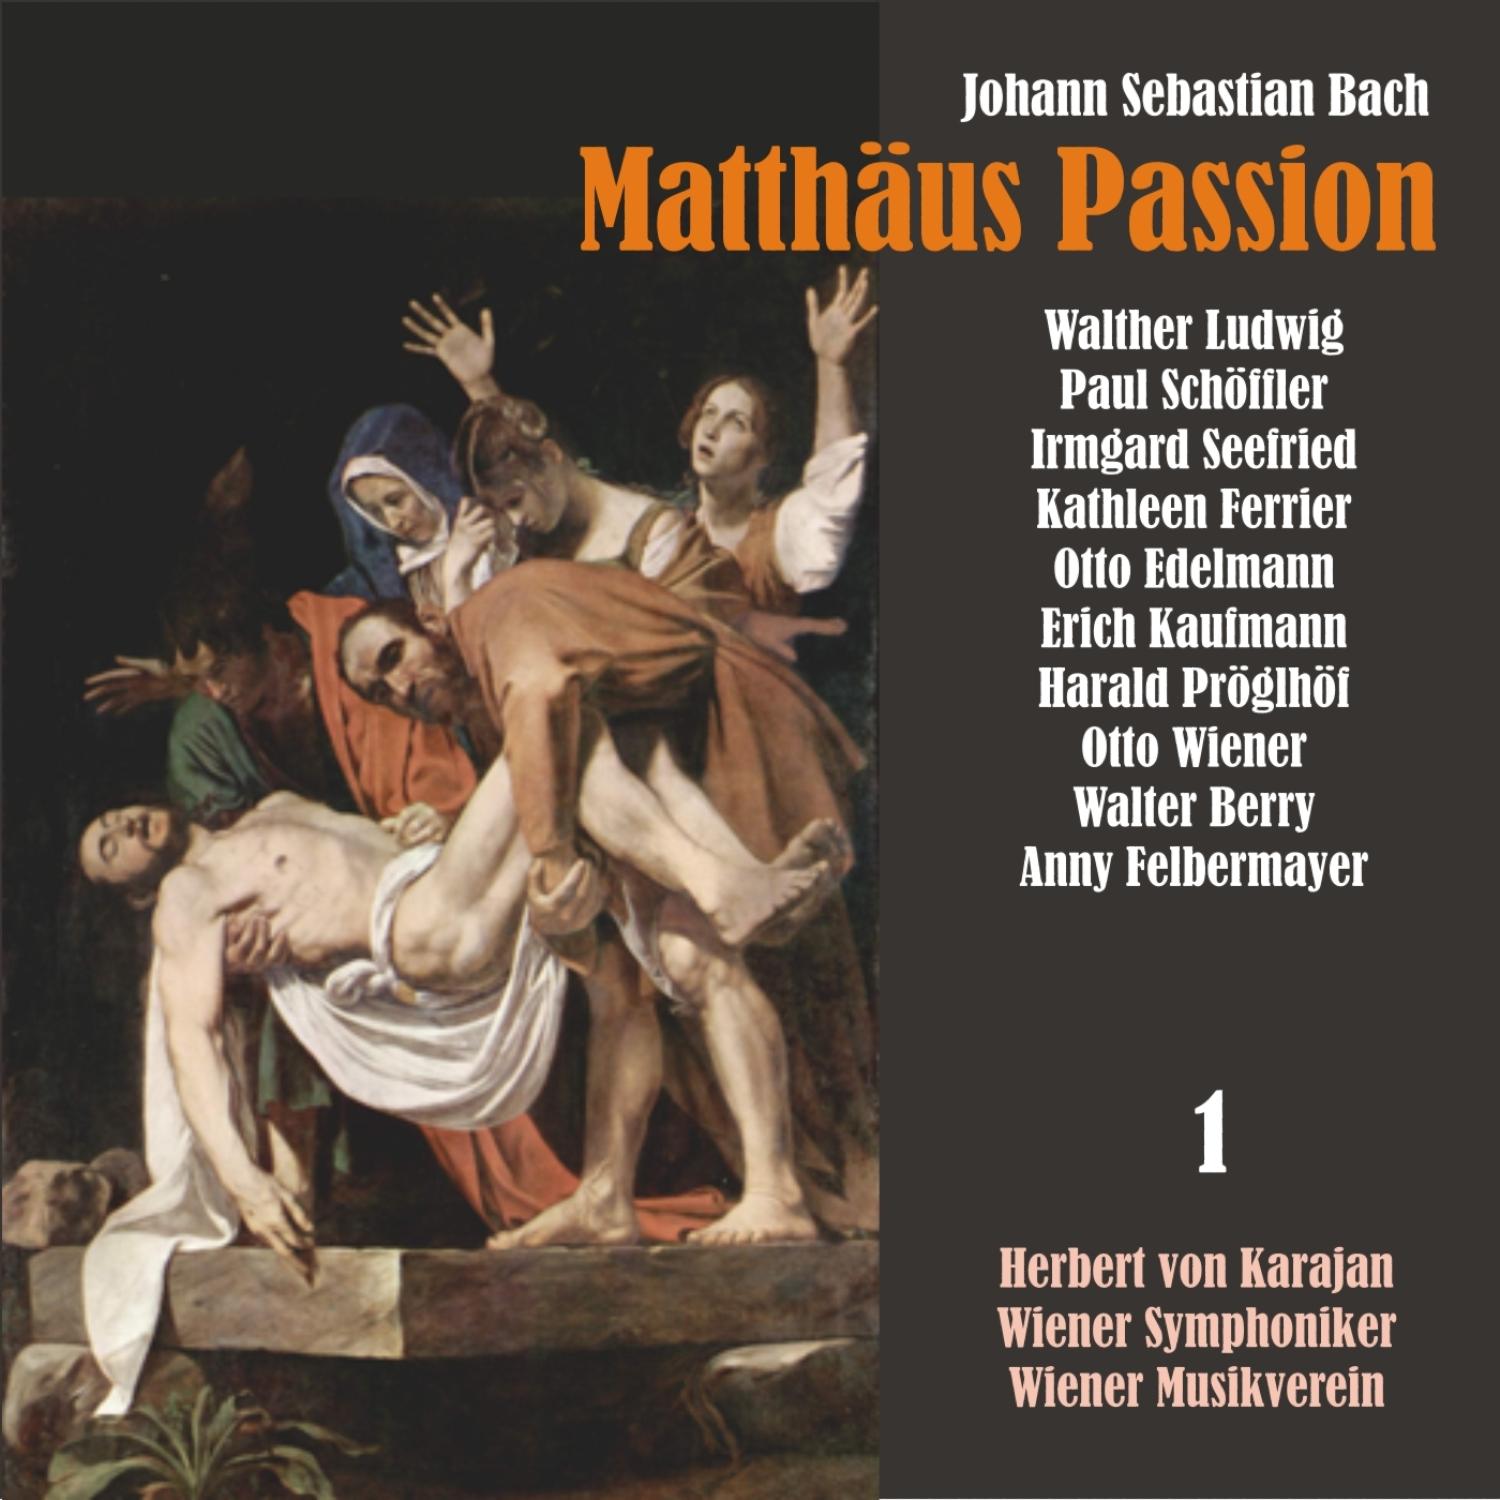 Matthäus Passion, BWV 244: "Erkenne mich, mein Huter"